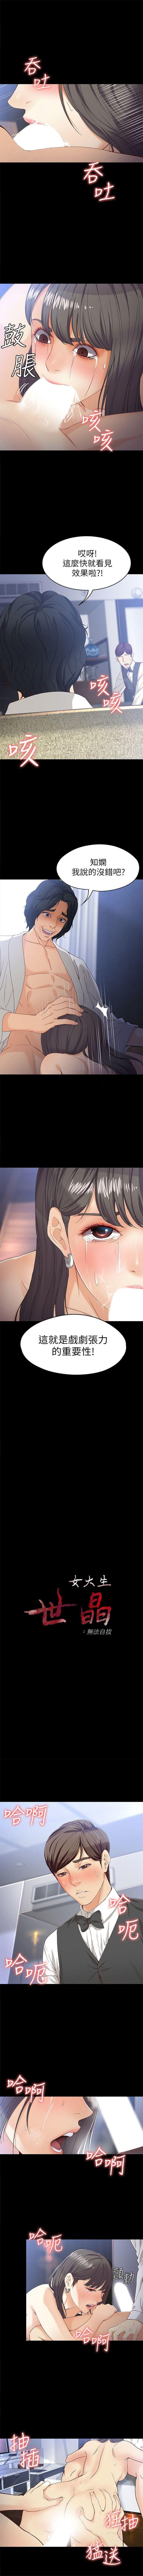 女大生世晶:无法自拔 1-40 中文翻译 （更新中） 180